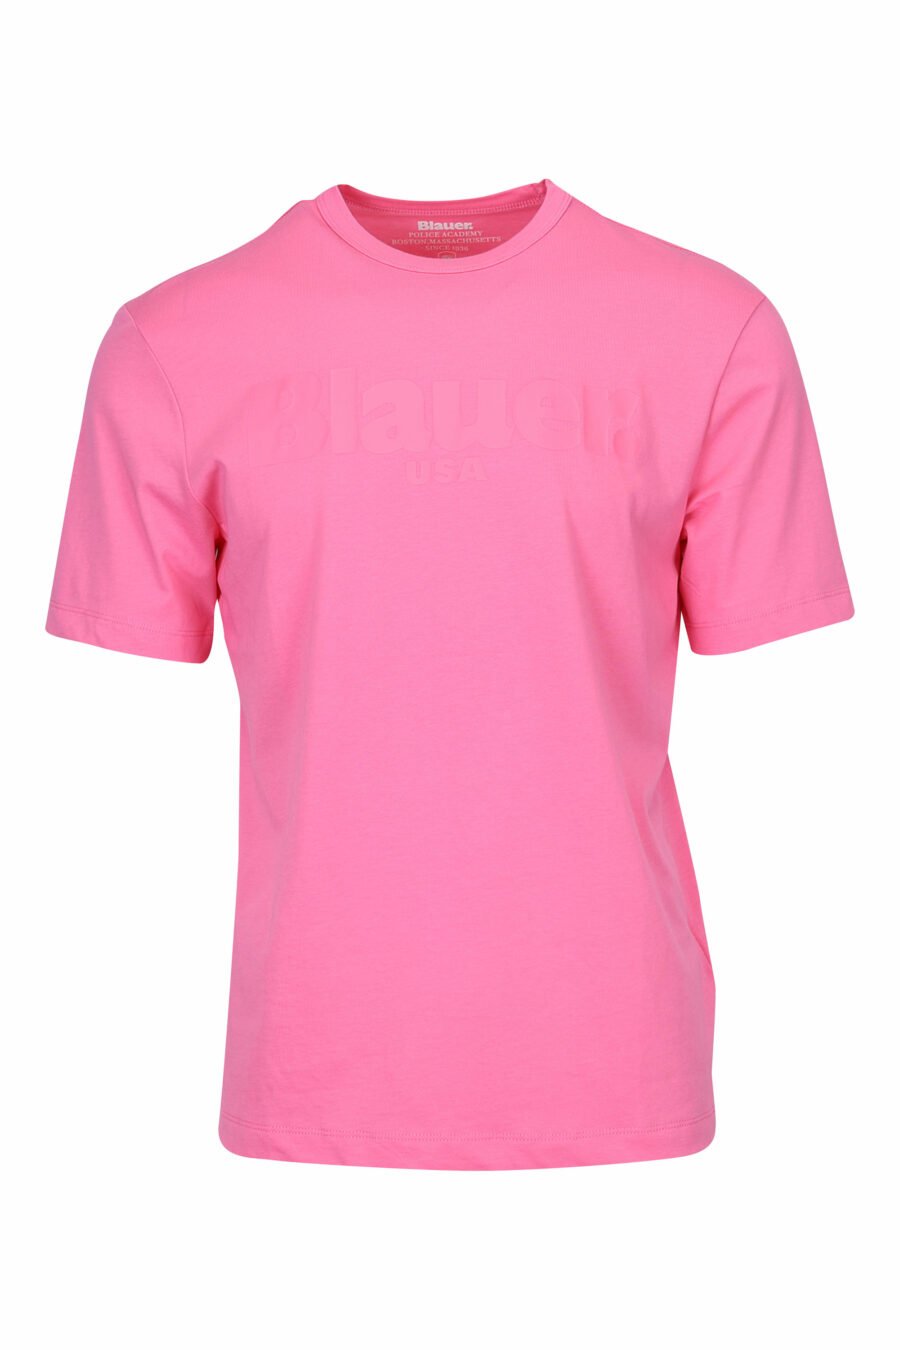 Camiseta rosa con maxilogo monocromático centro - 8058610799205